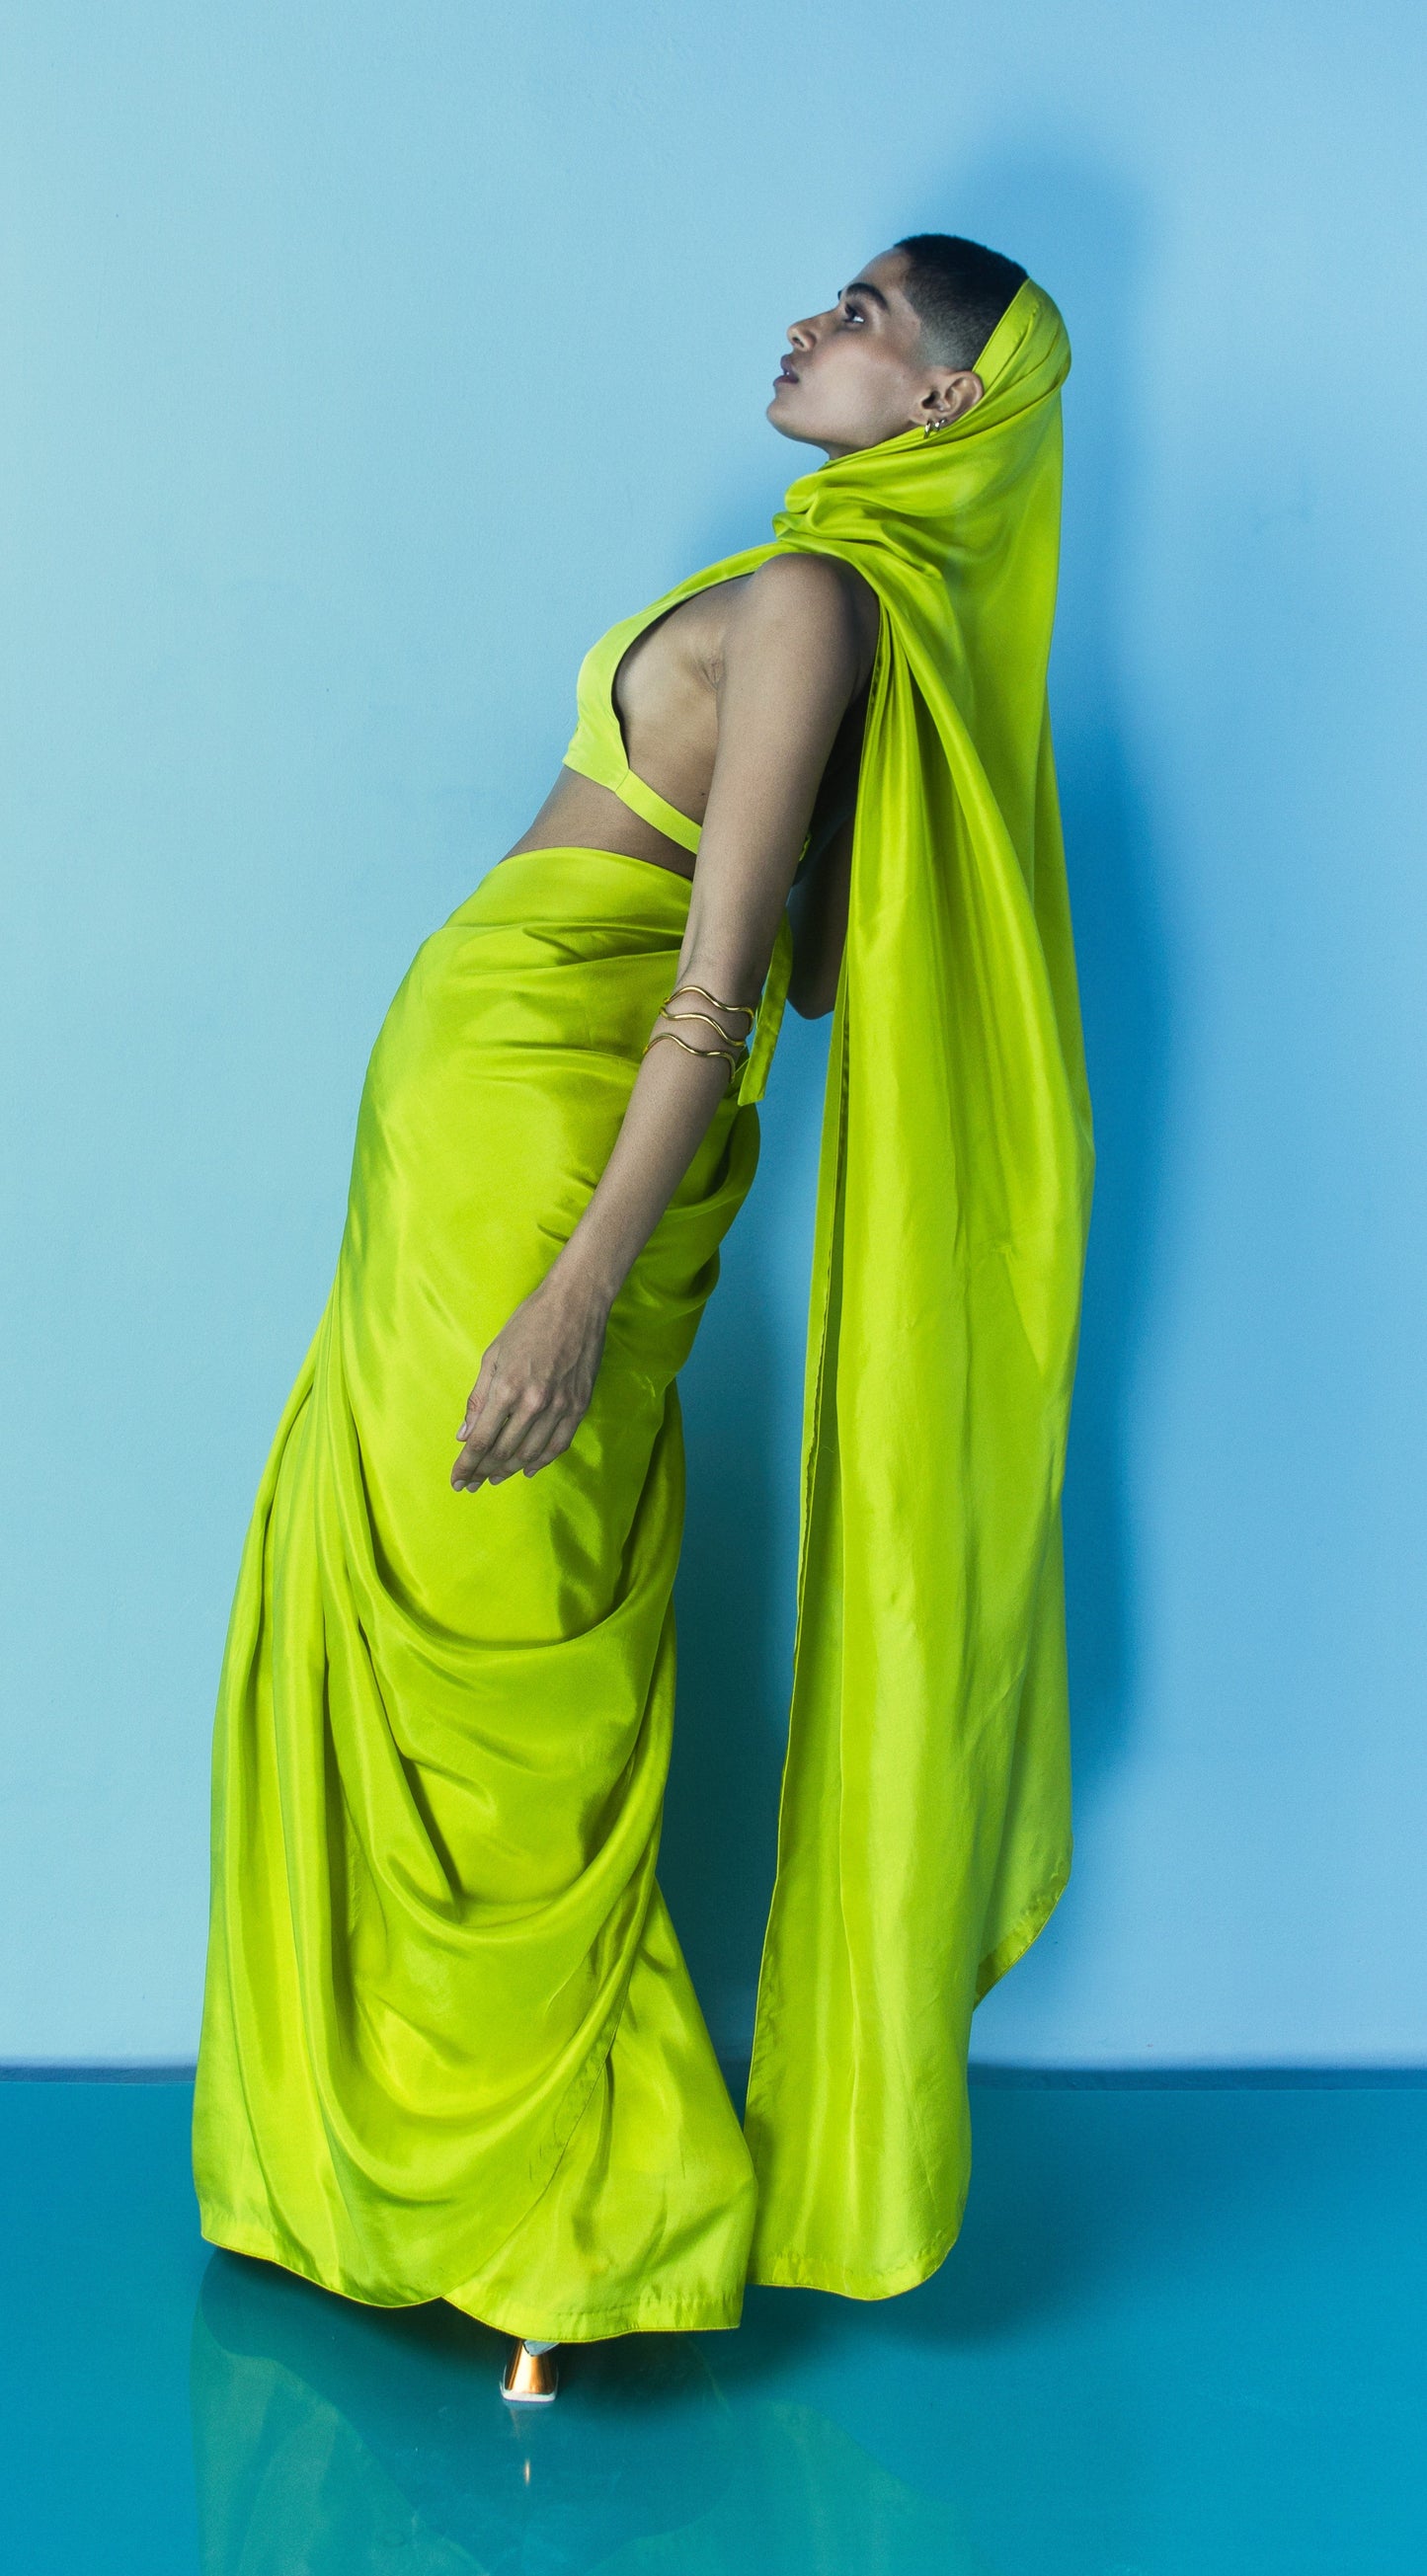 Sobhita Dhulipala in Handwoven Lime Green Silk Saree